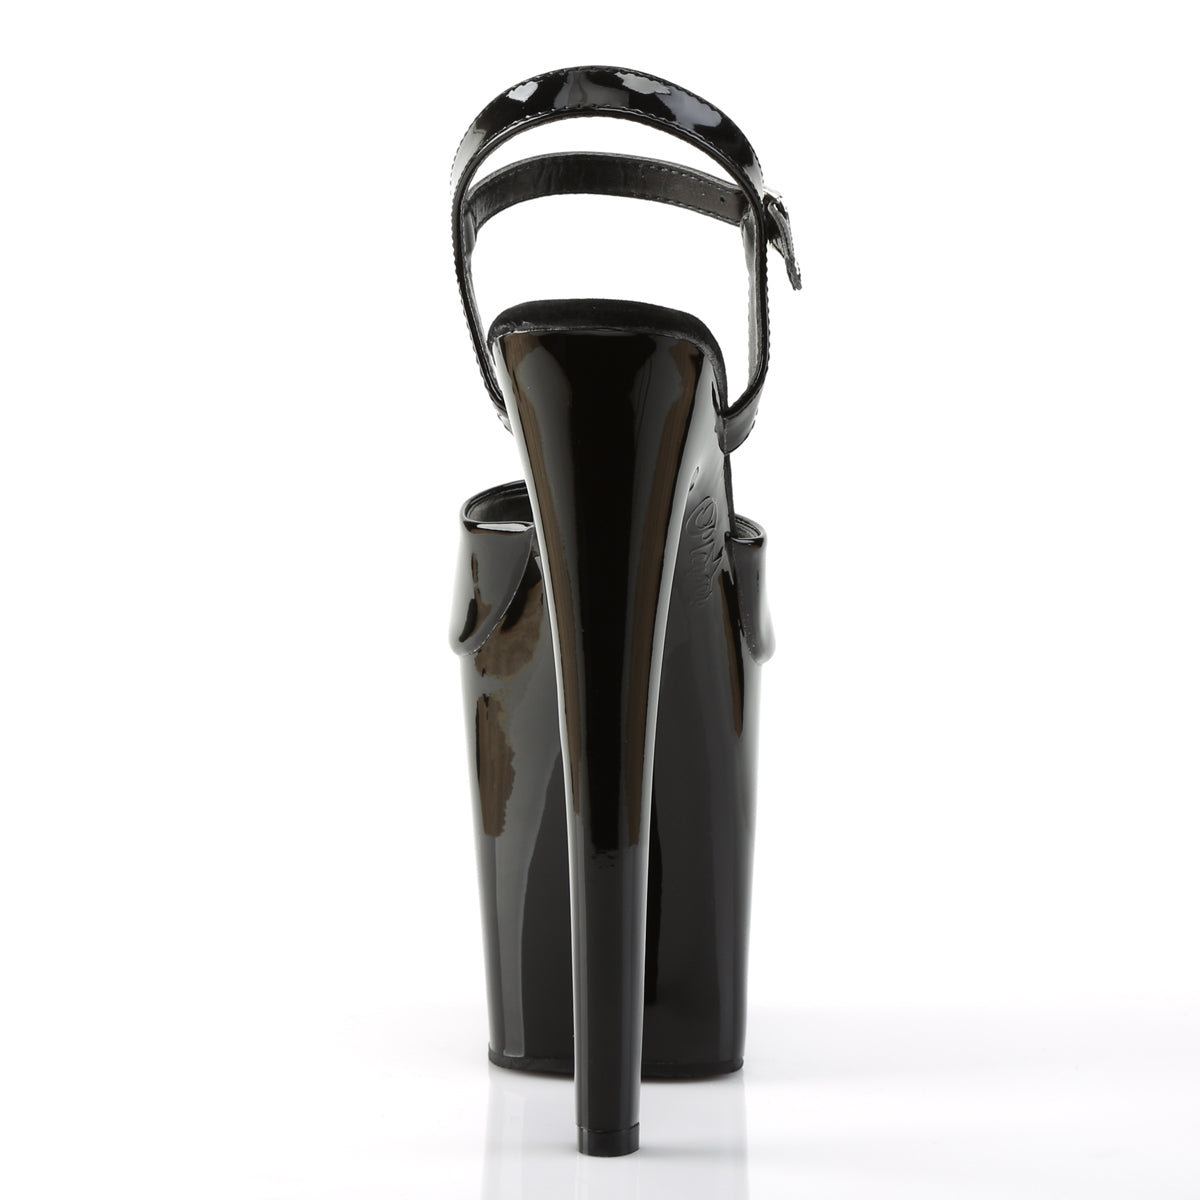 XTREME-809 Pleaser Black Patent Platform Shoes [Exotic Dancing Shoes]